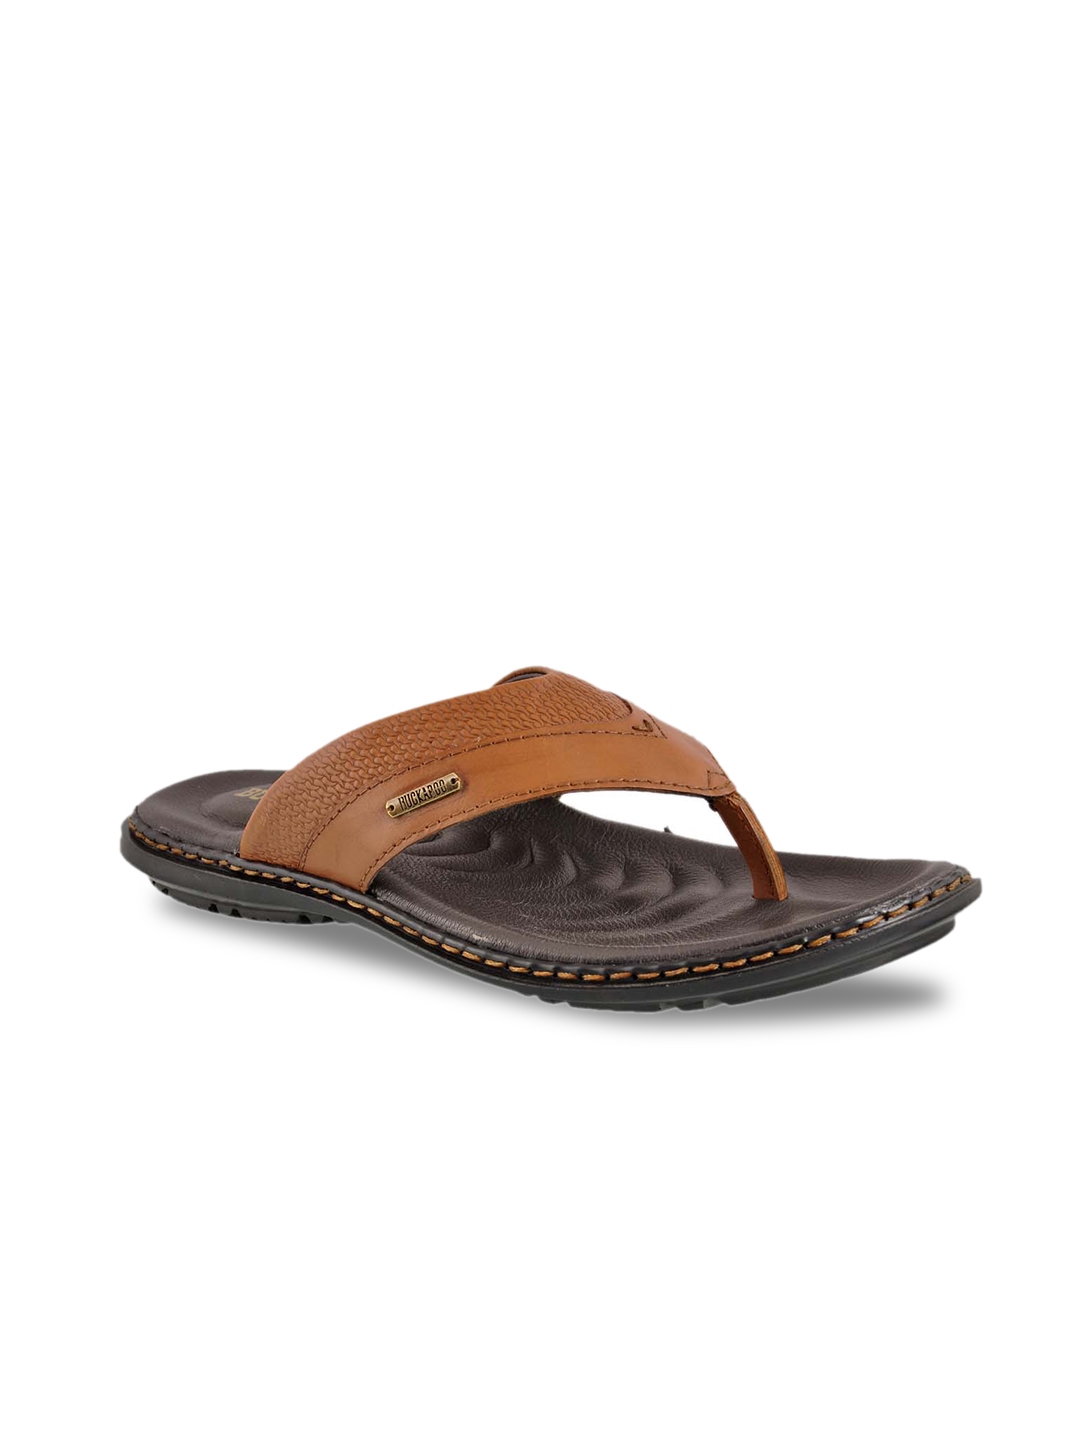 Buy Buckaroo Men Leather Comfort Sandals - Sandals for Men 22865160 ...